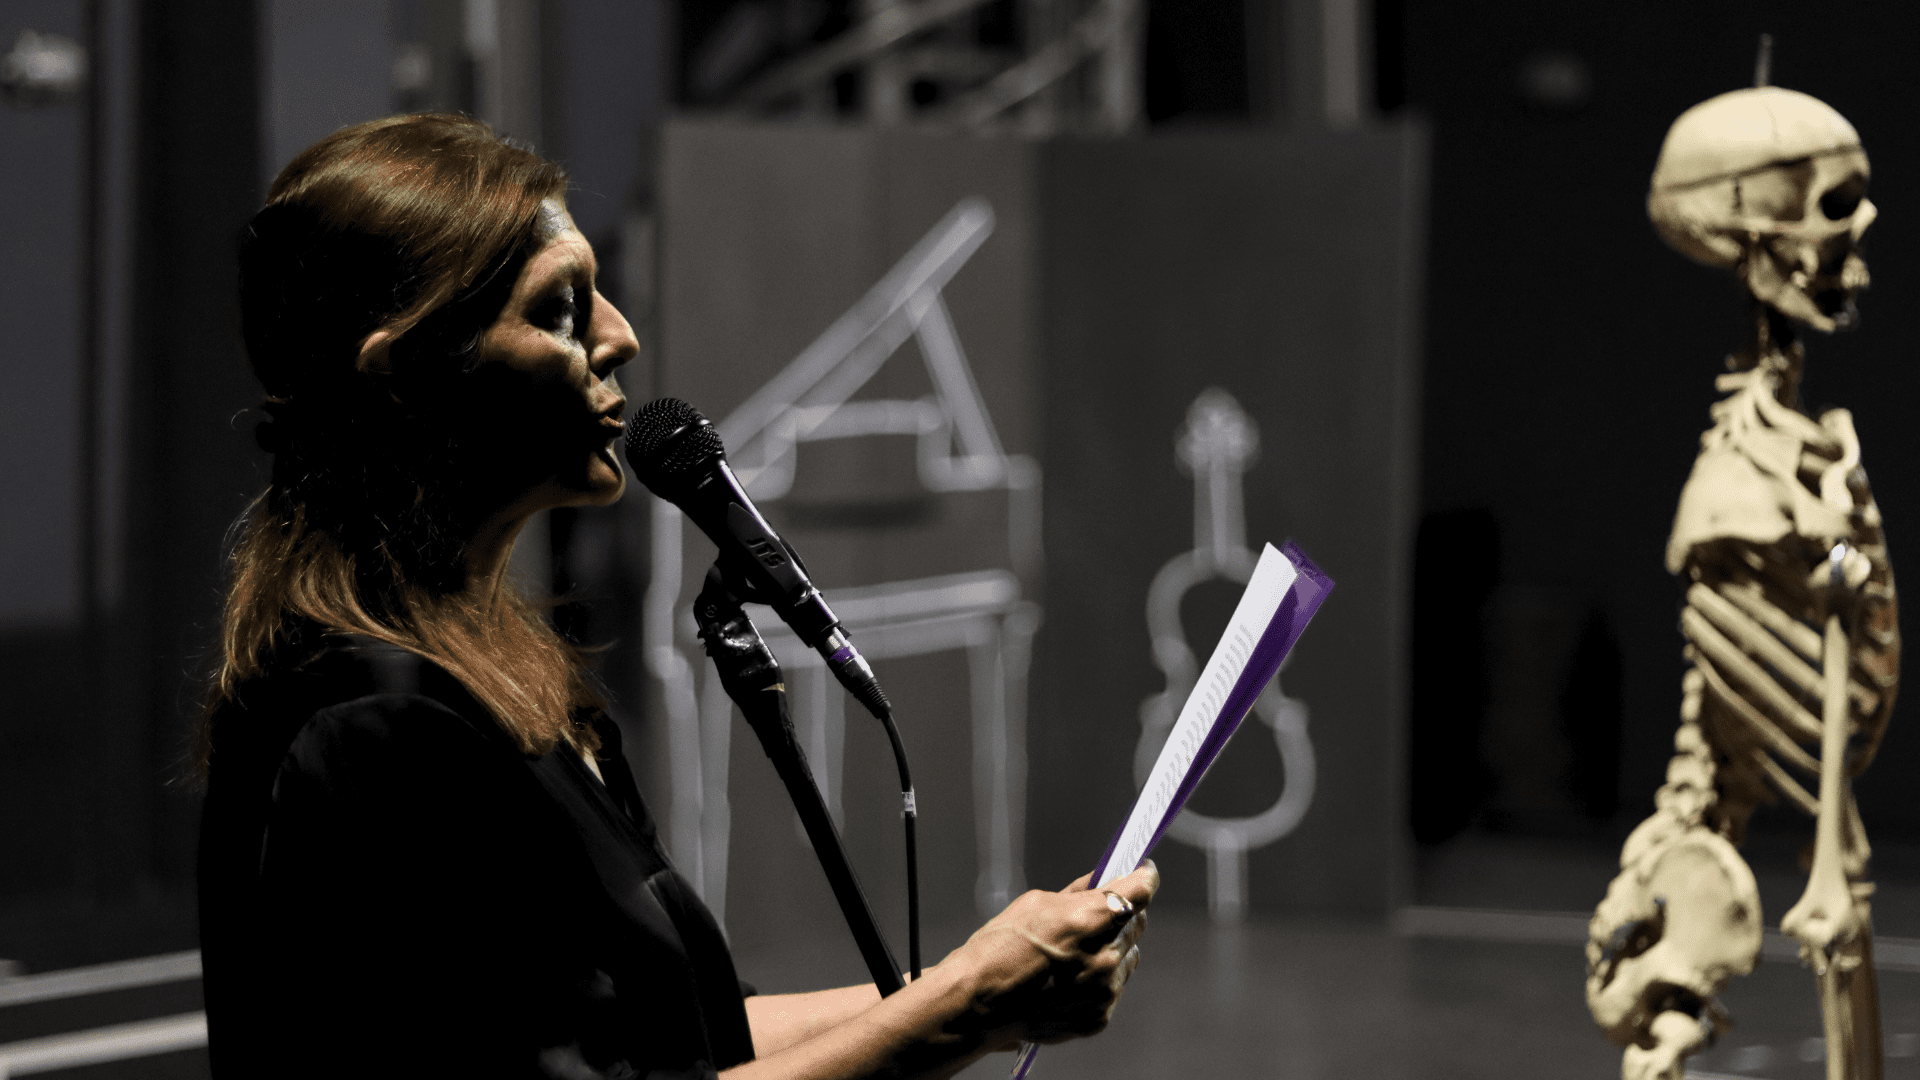 Η Ελευσίνα γίνεται χώρος συνάντησης Πανεπιστημιακών Παραστατικών Τεχνών και Θεάτρου